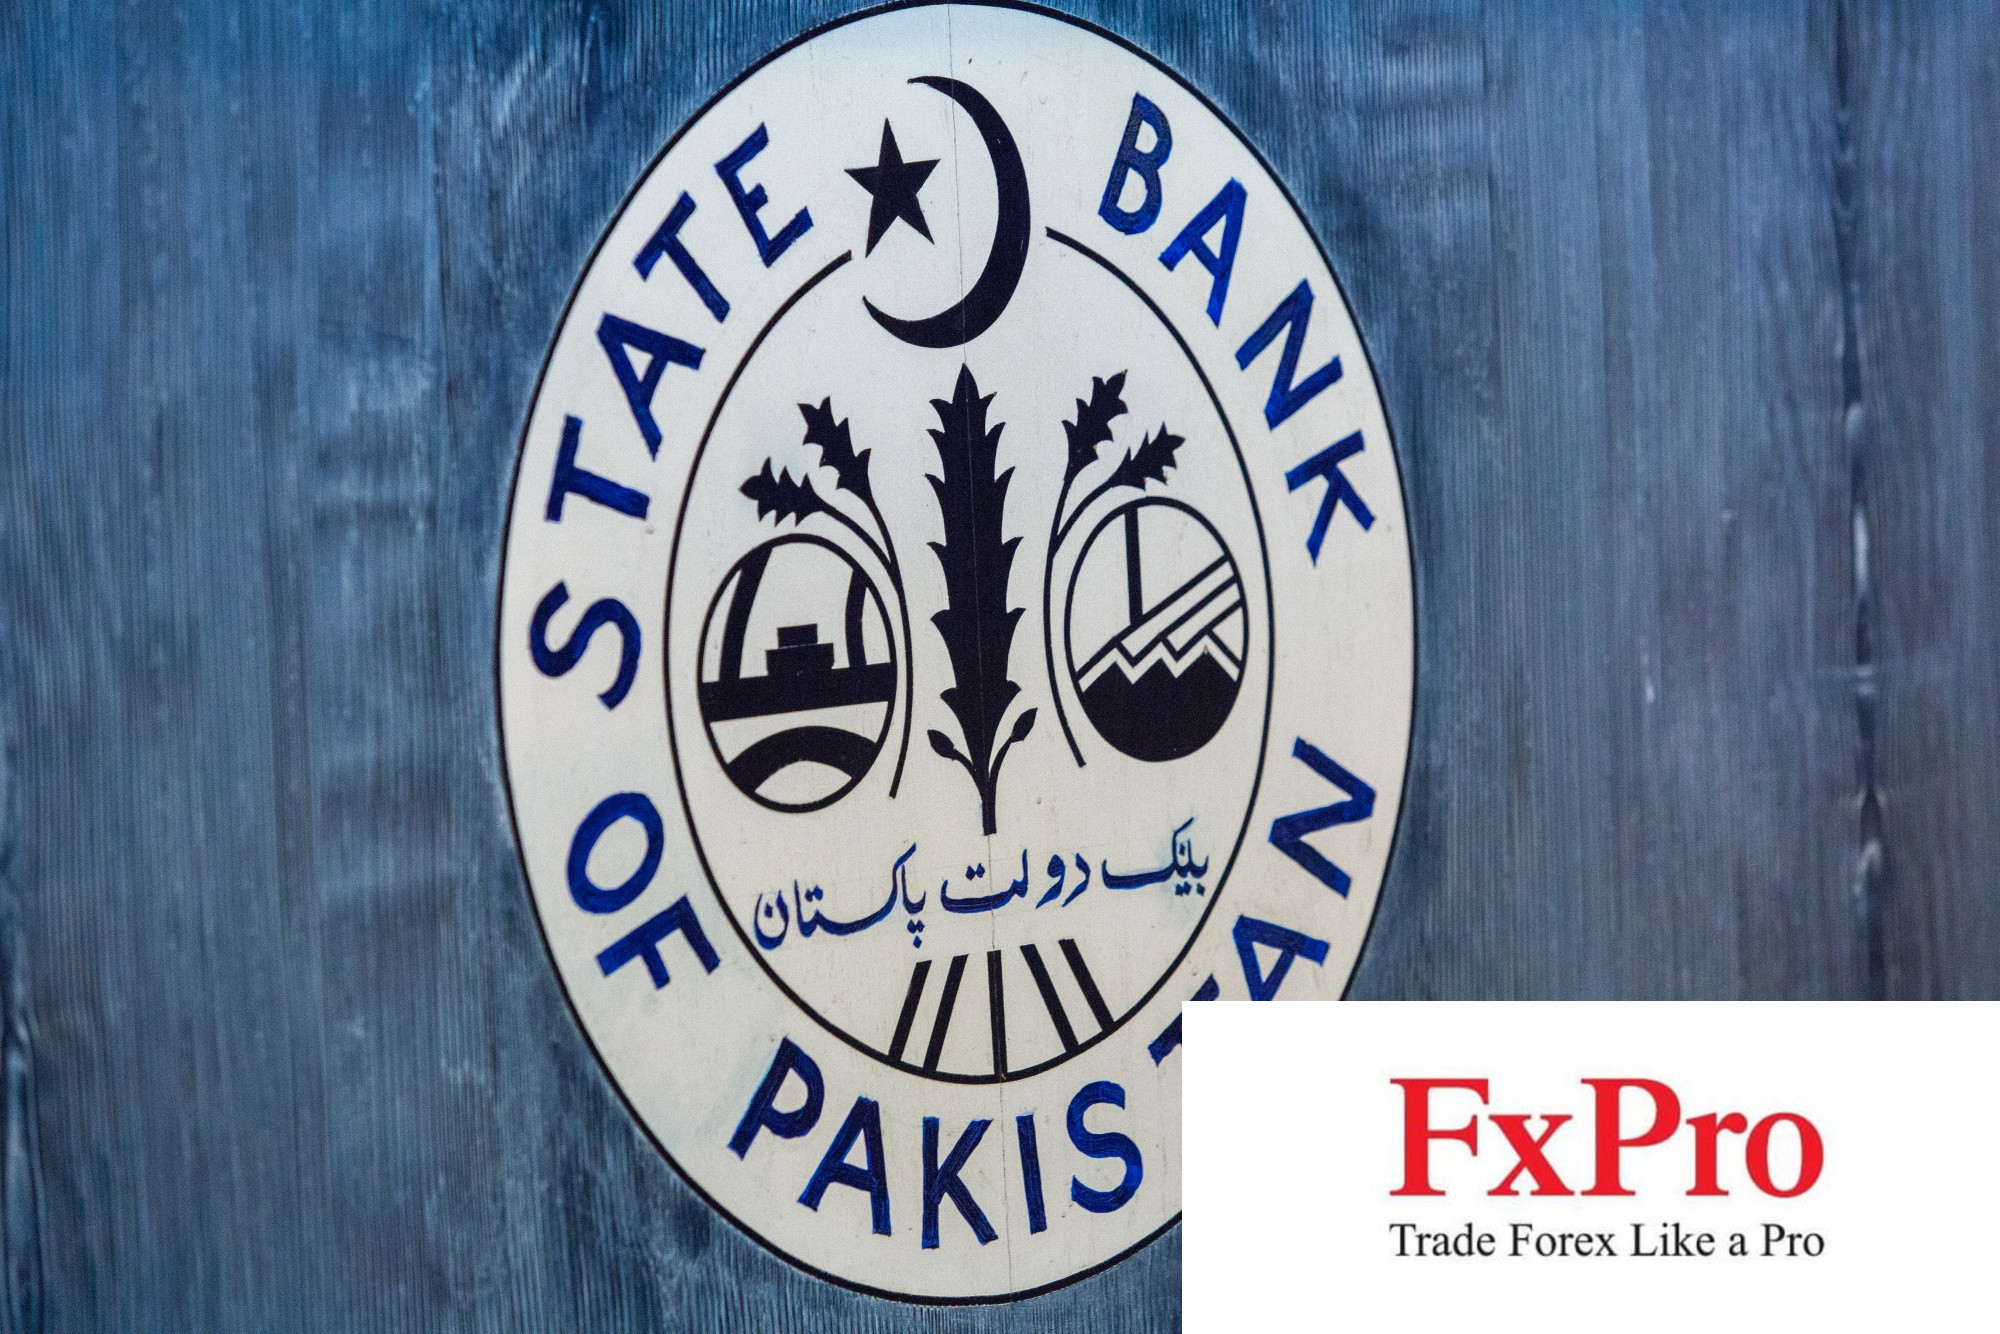 Pakistan tiếp tục giữ lãi suất ở mức kỷ lục trước khi được IMF phê duyệt khoản vay 700 triệu USD